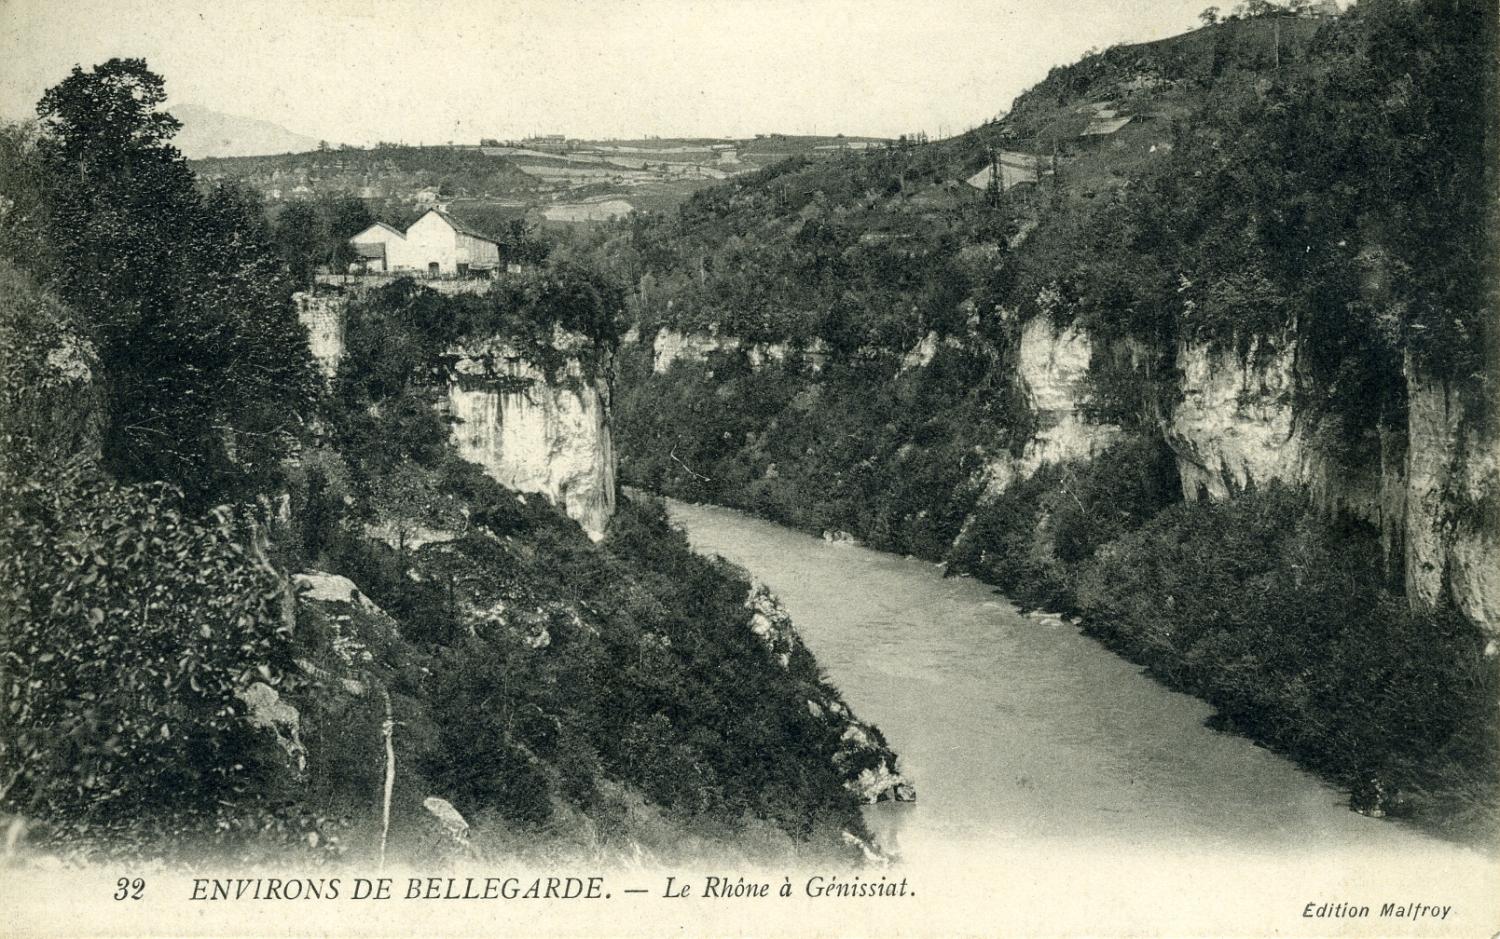 ENVIRONS DE BELLEGARDE. - Le Rhône à Génissiat.